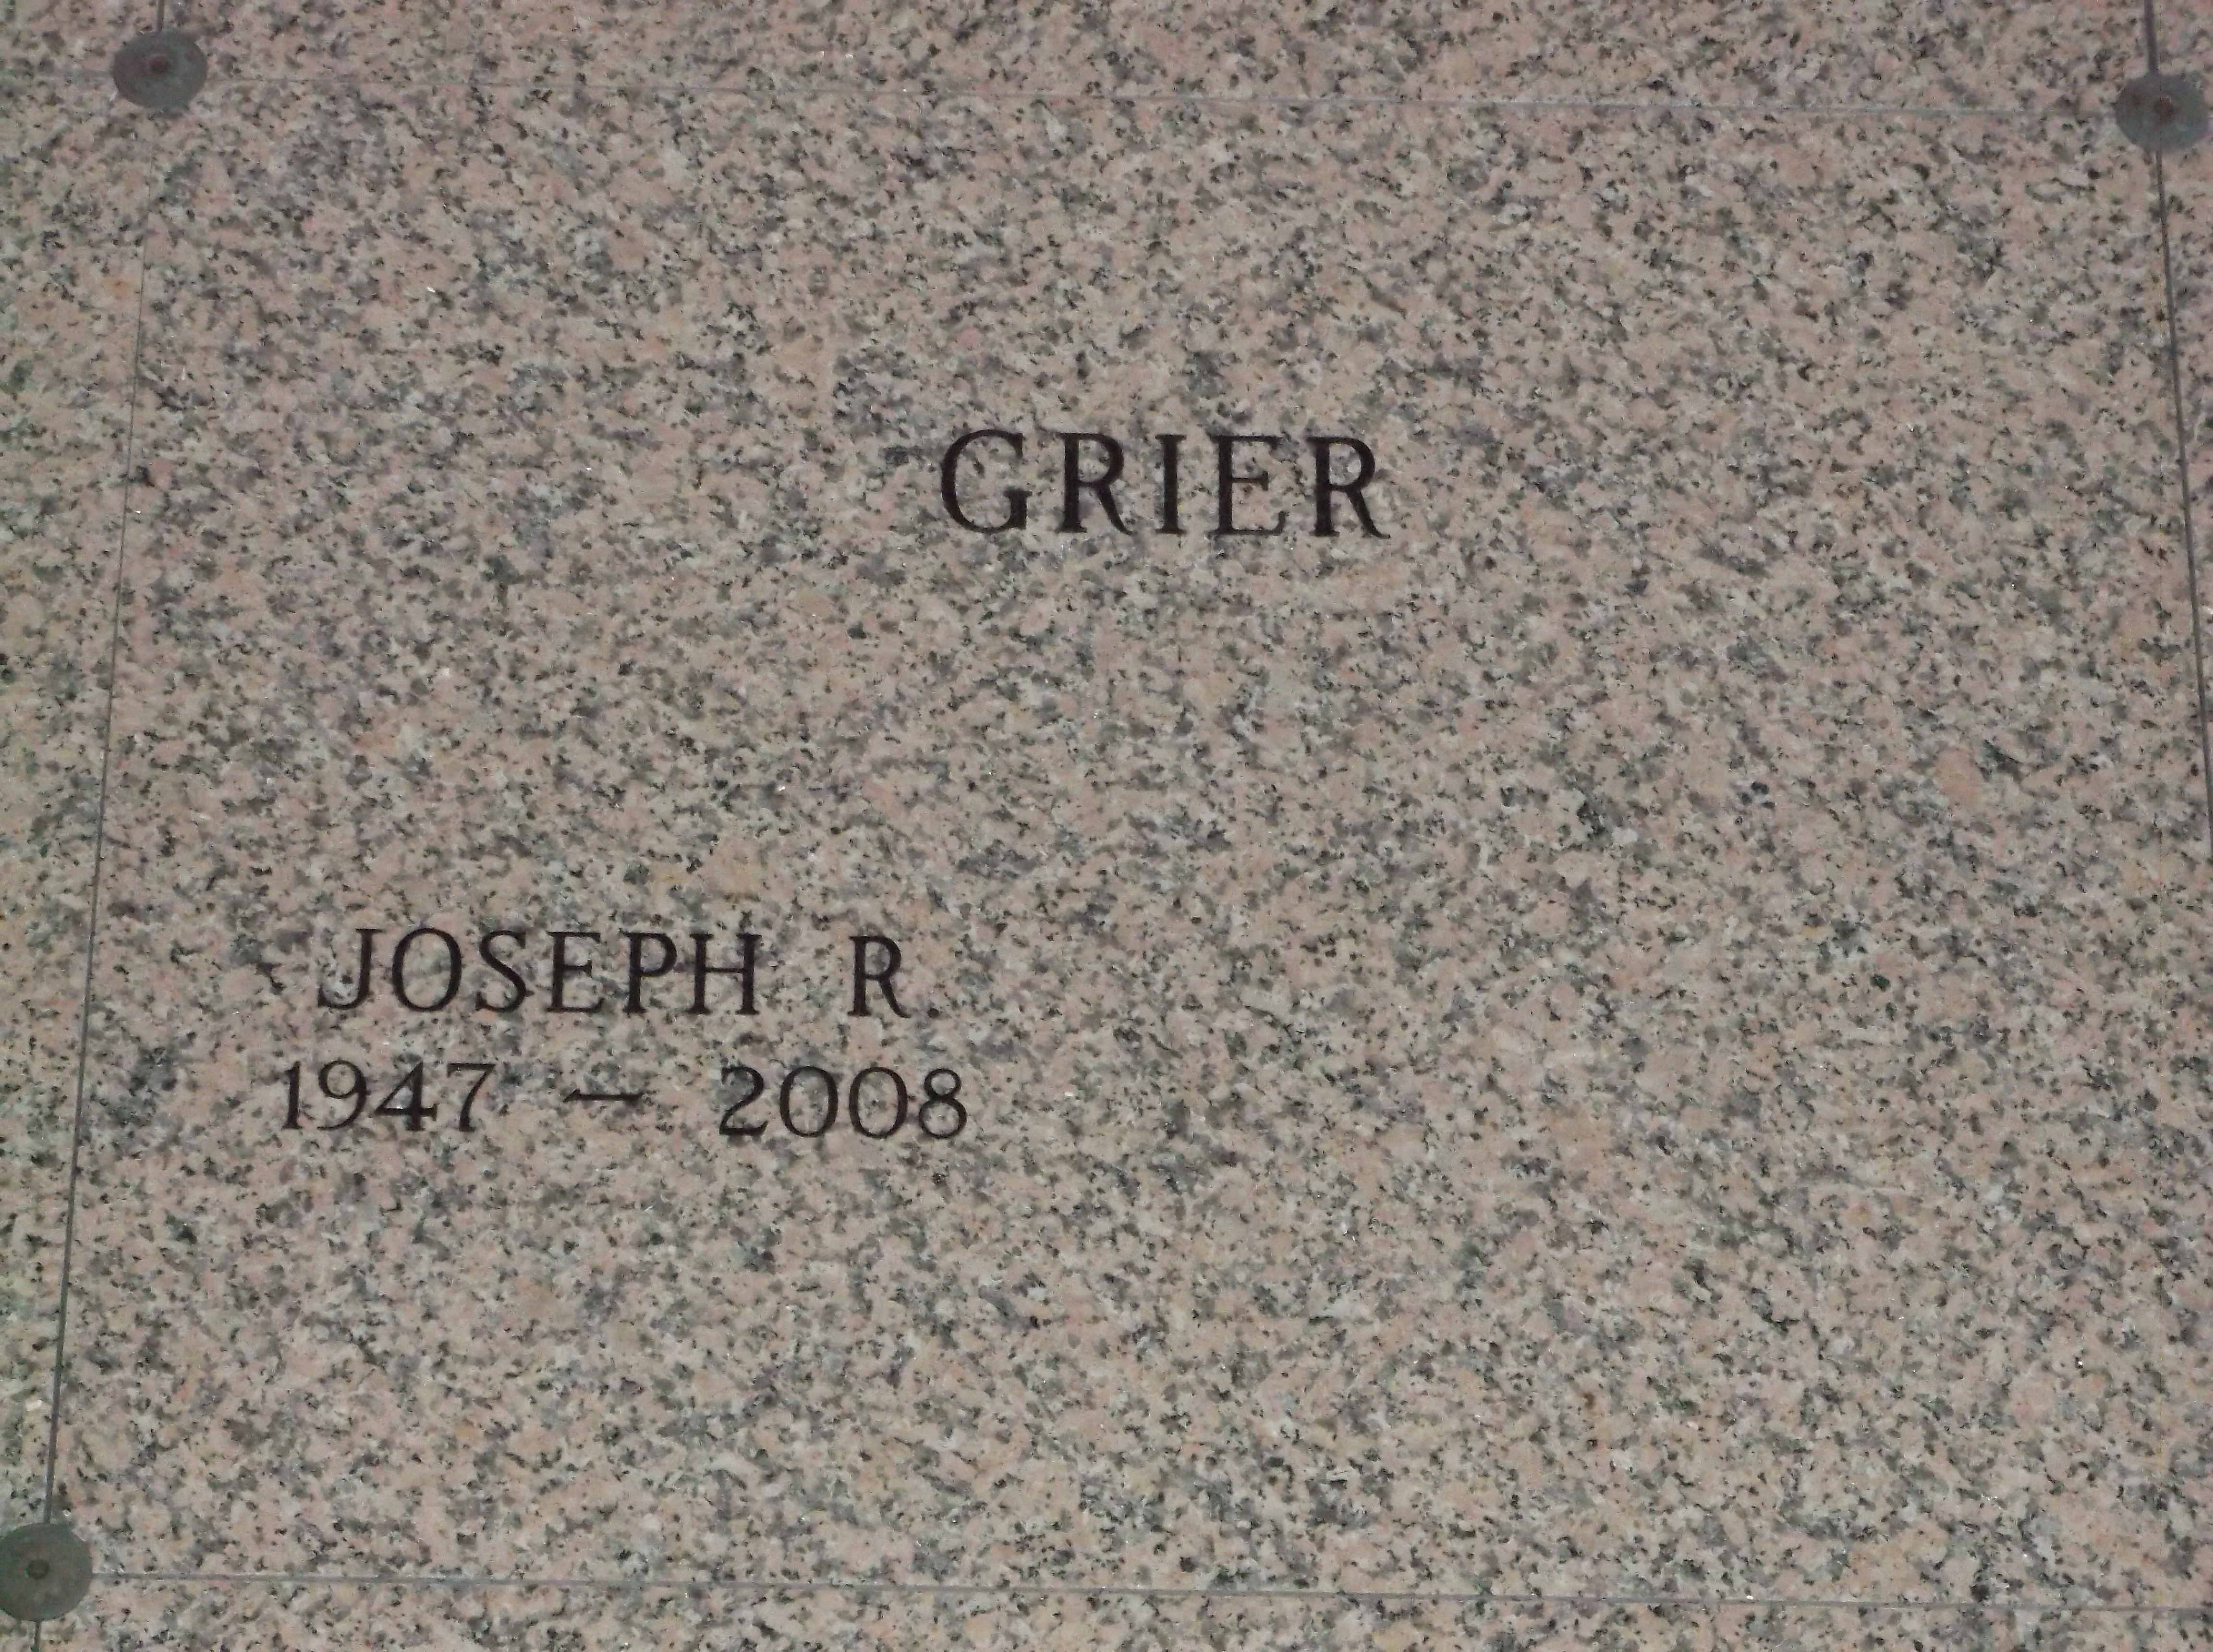 Joseph R Grier